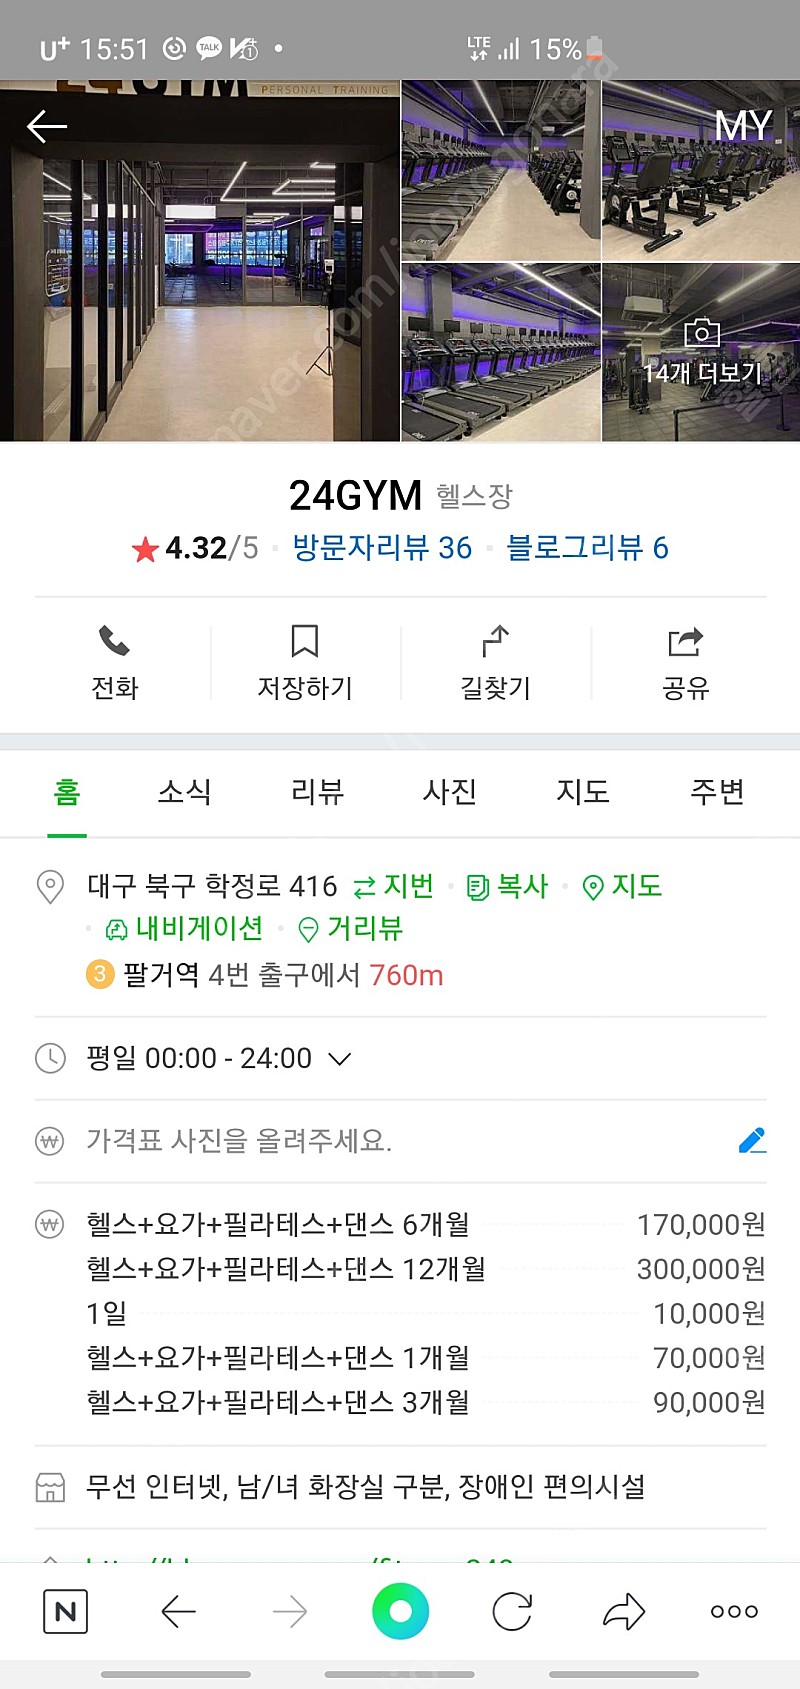 대구북구칠곡 동천동 24gym 헬스장 회원권 양도 290일